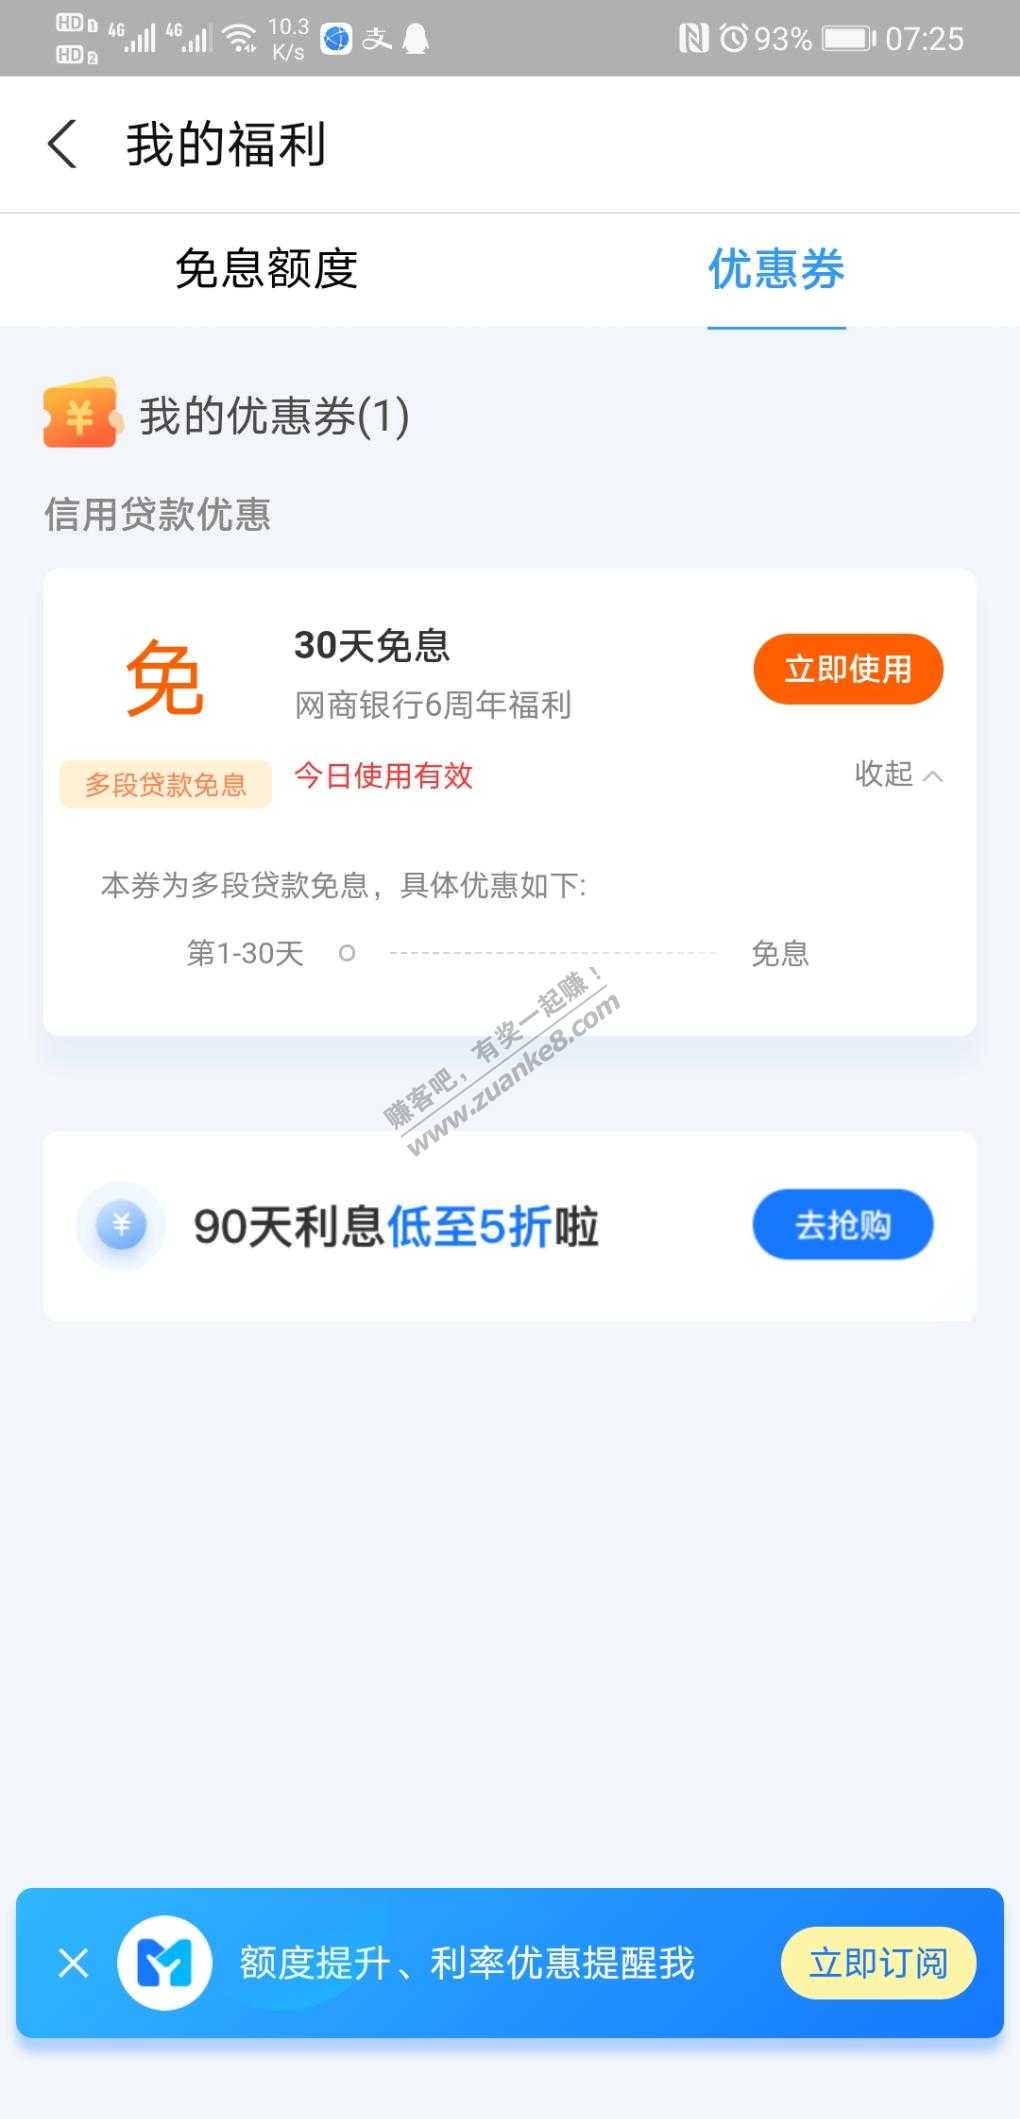 支付宝网商贷大毛-惠小助(52huixz.com)